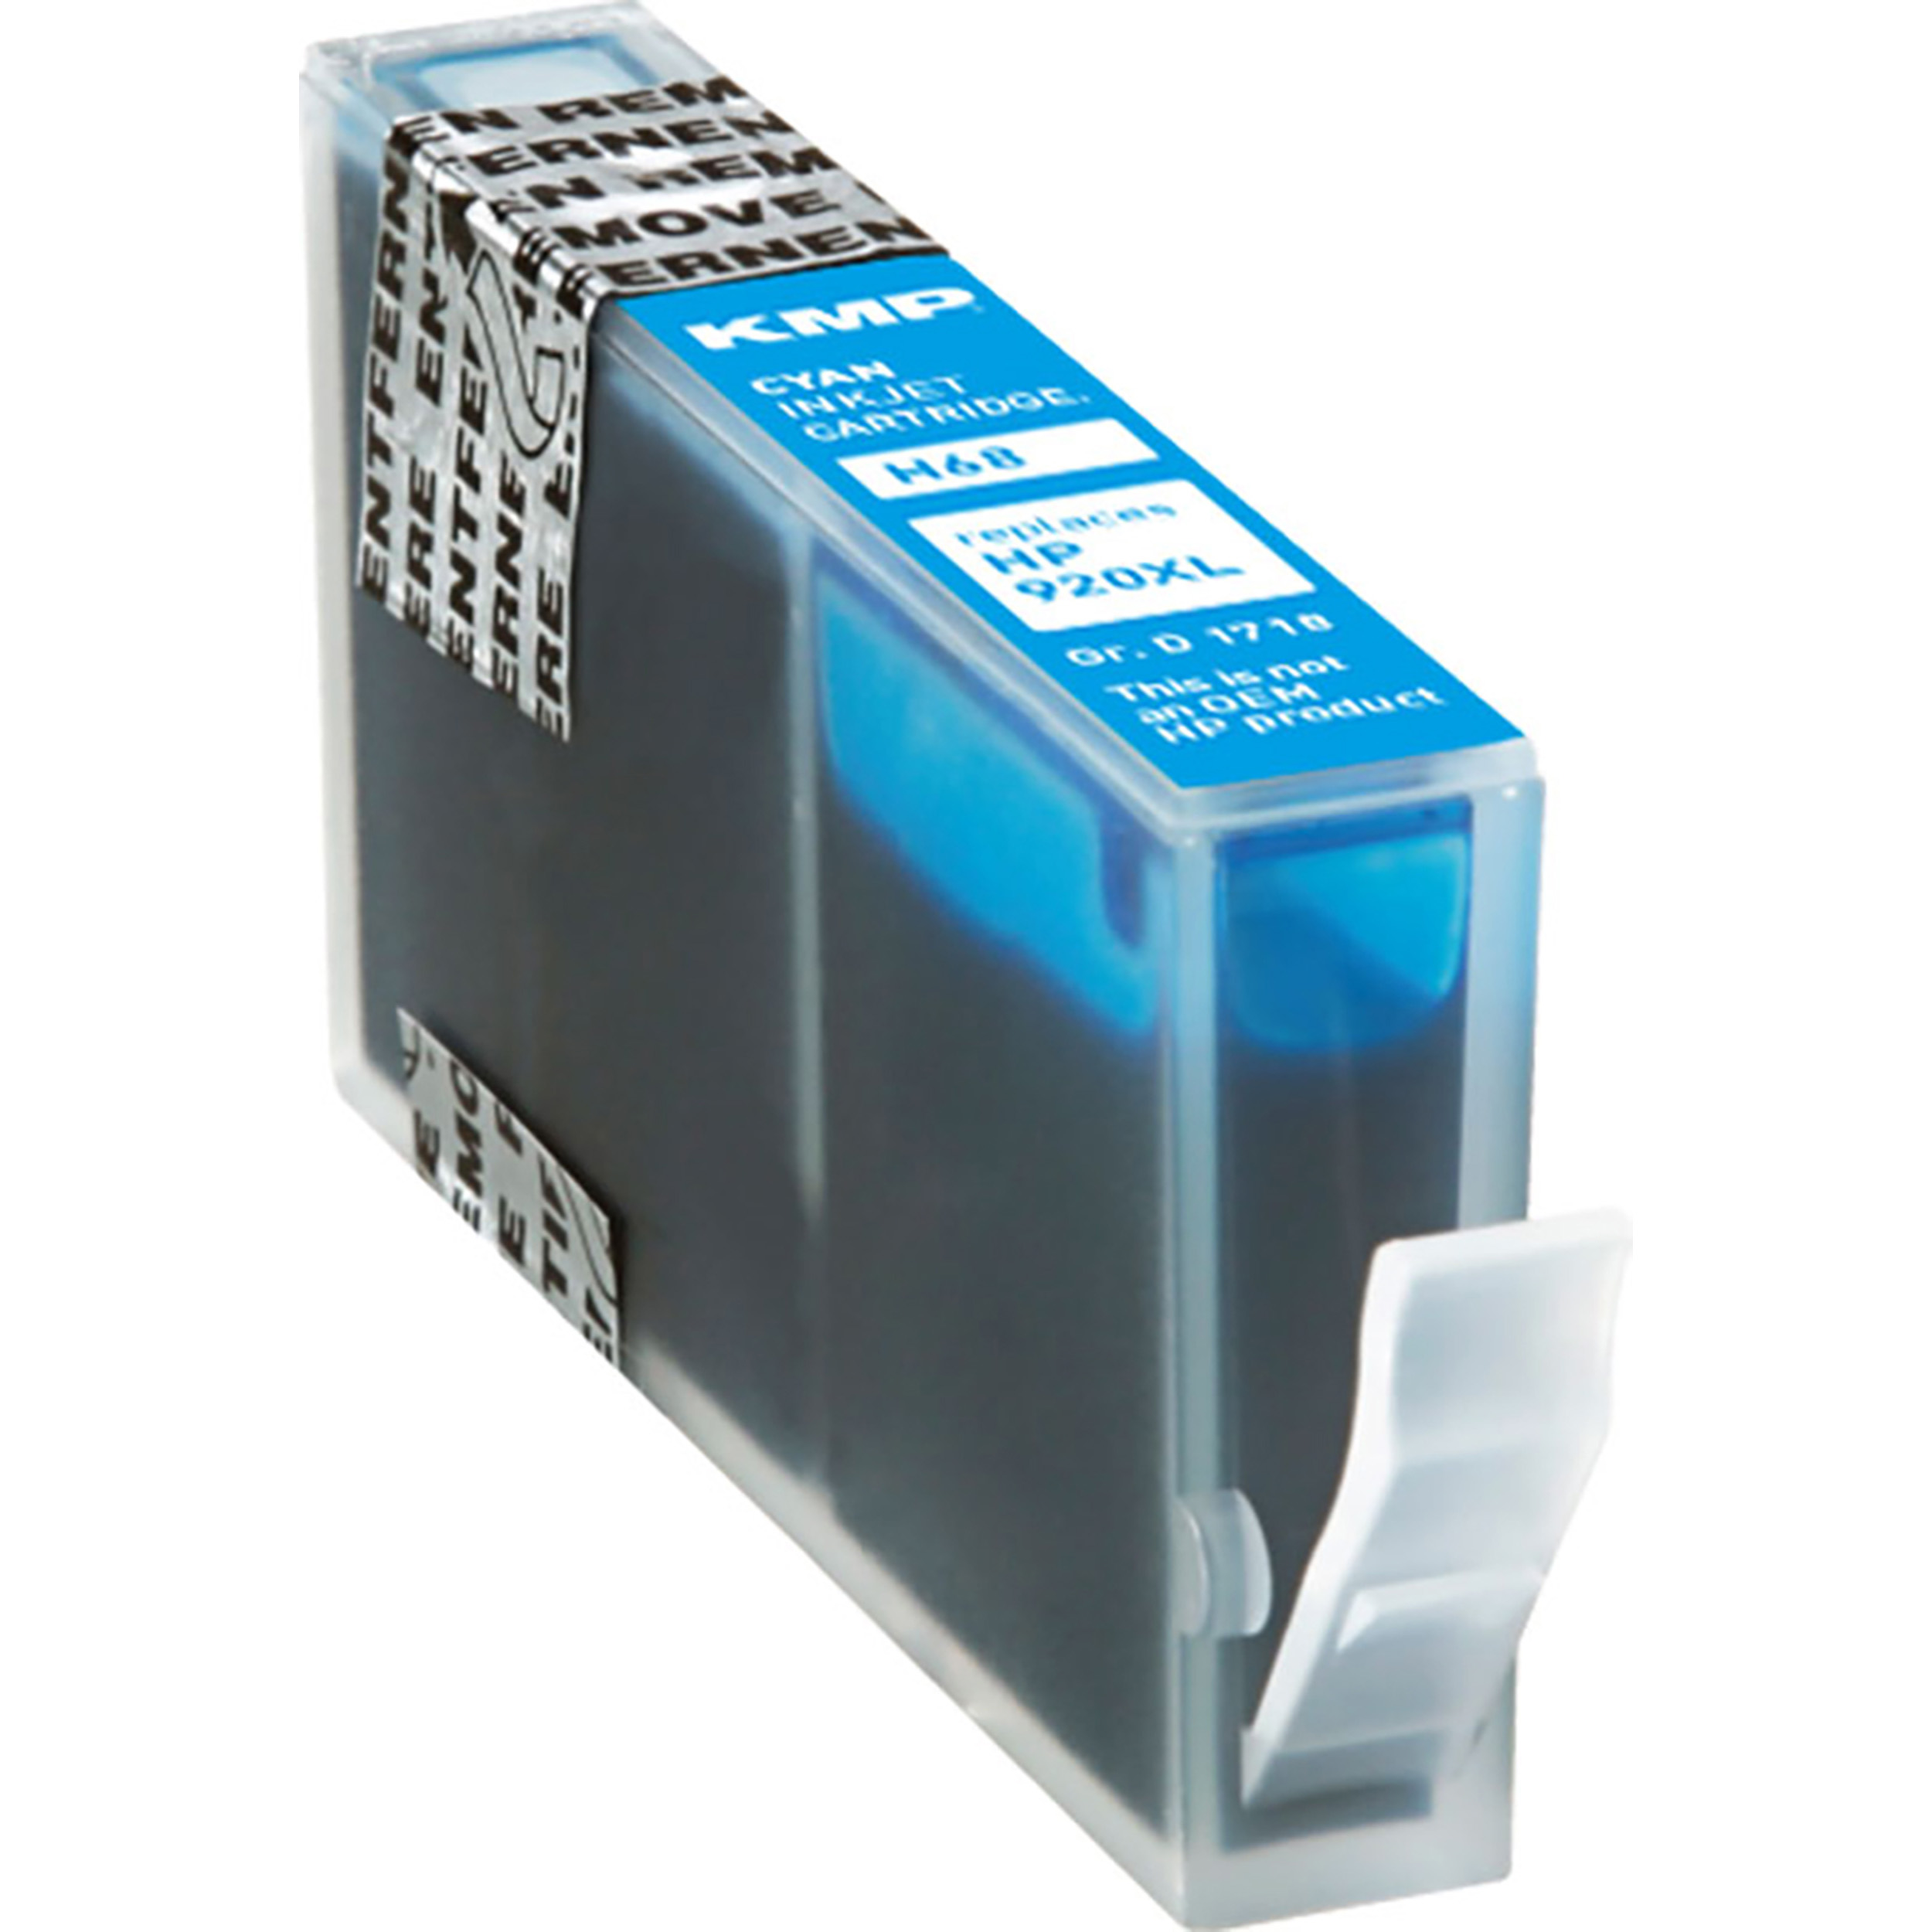 KMP Tintenpatrone für HP (CD972AE) Cartridge (CD972AE) Ink Cyan 920XL cyan